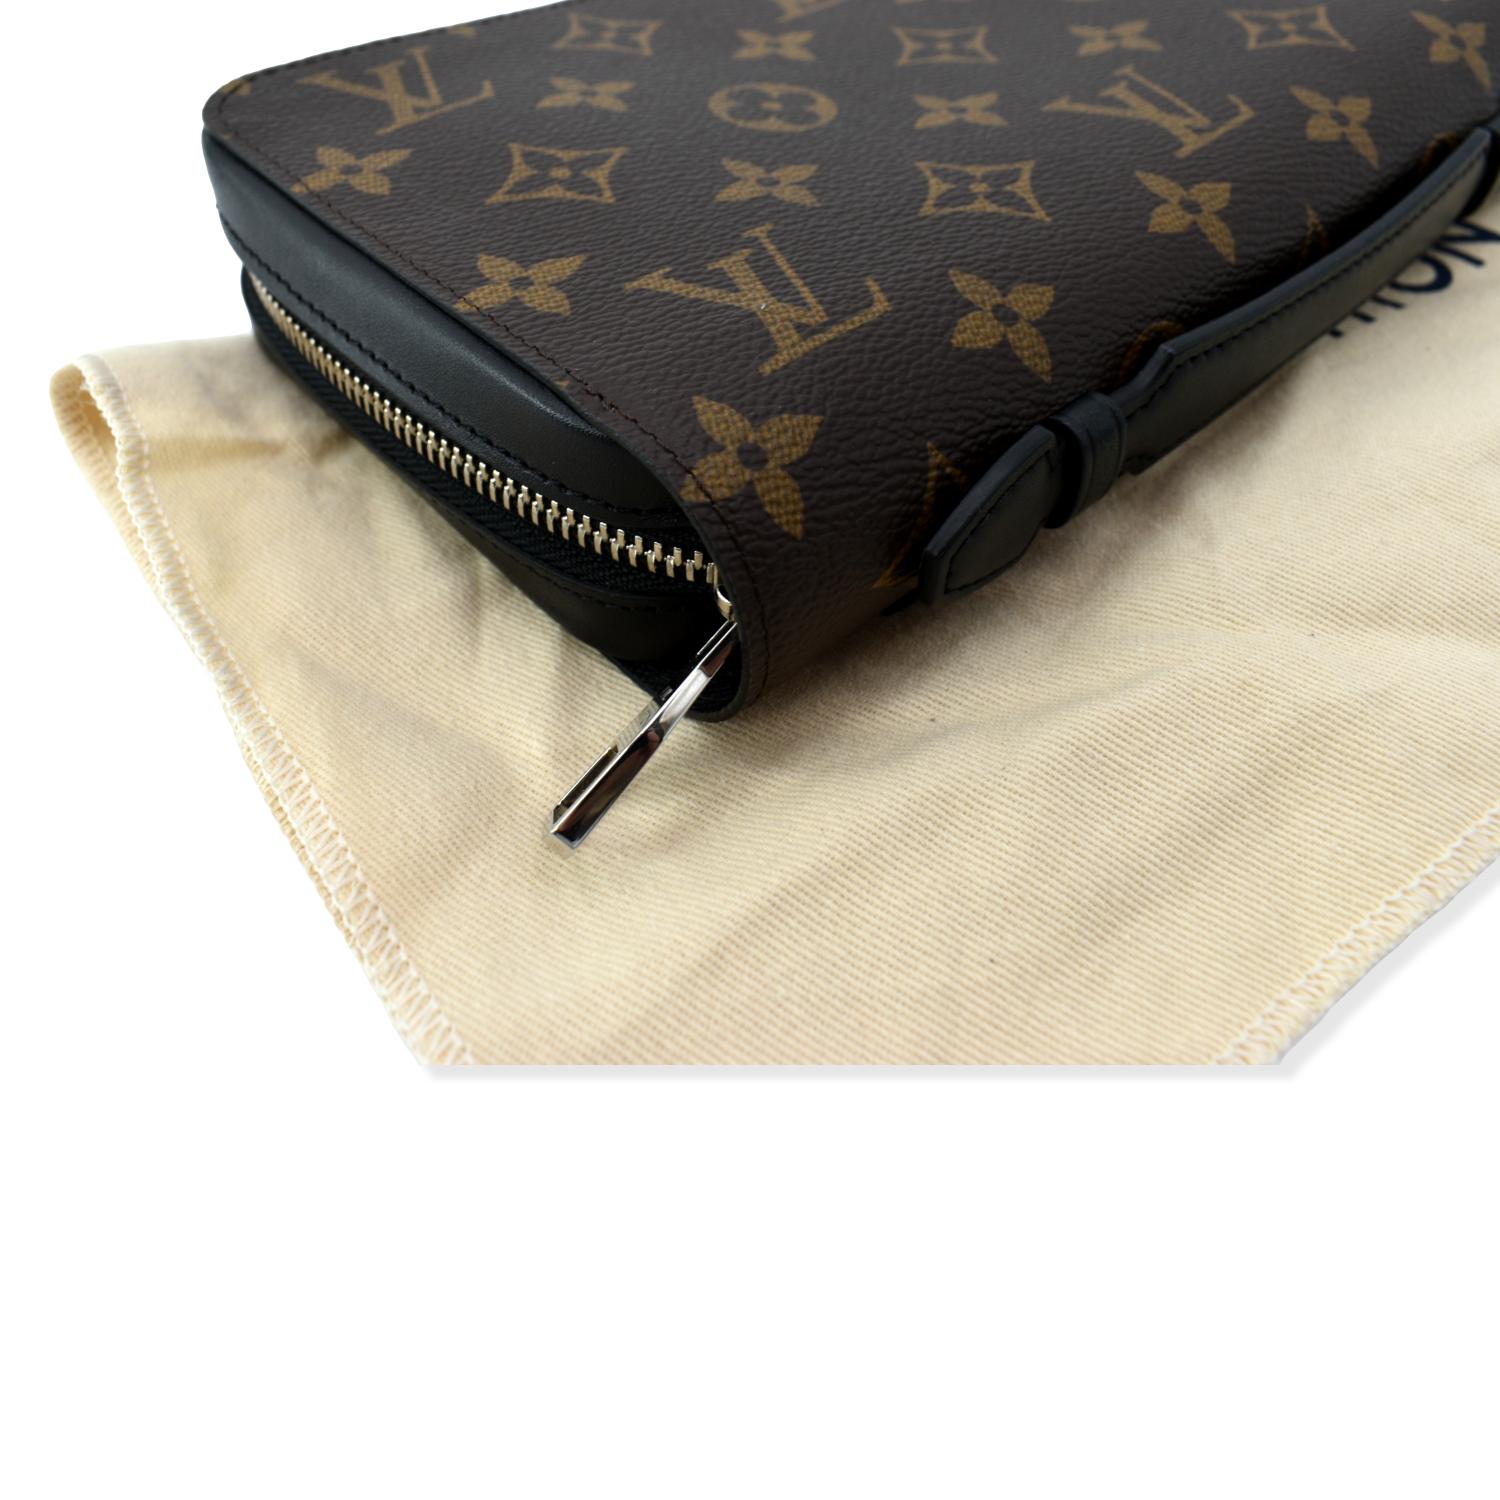 Louis Vuitton Zippy XL Wallet, Black